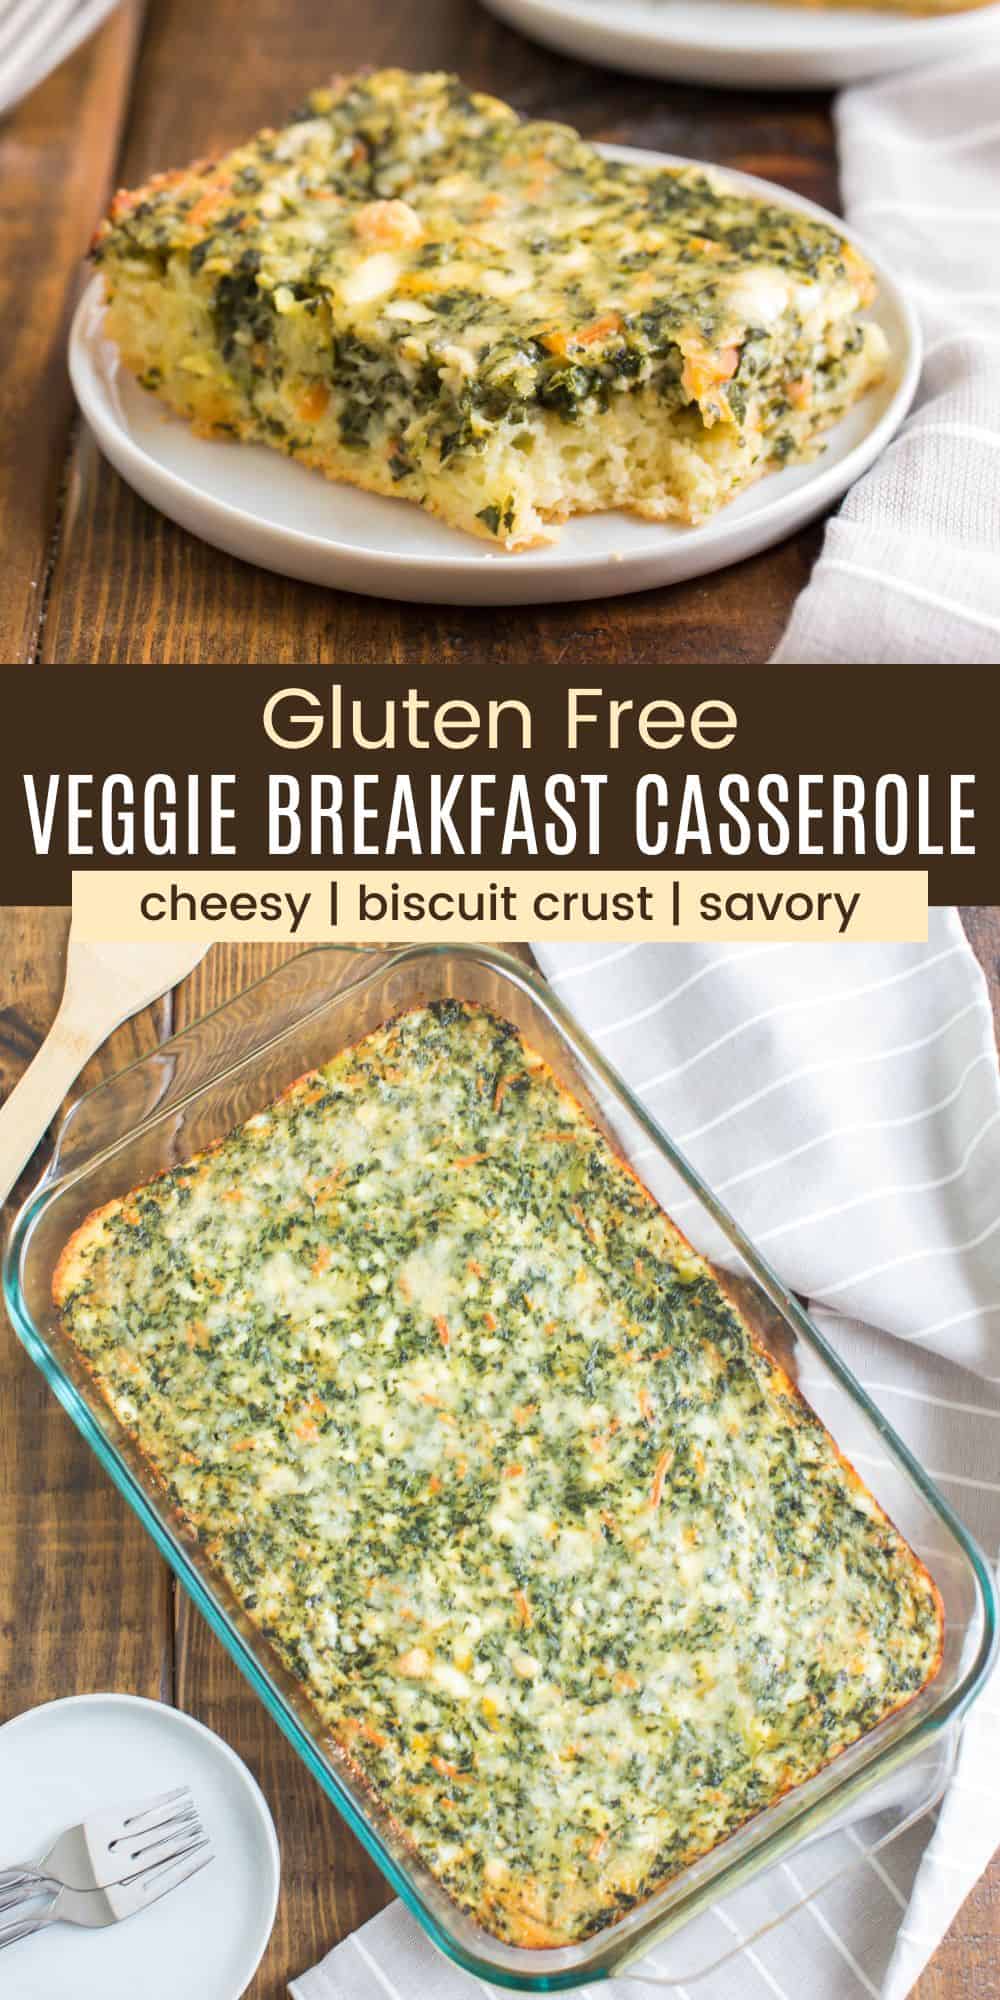 Gluten Free Veggie Breakfast Casserole | Cupcakes & Kale Chips